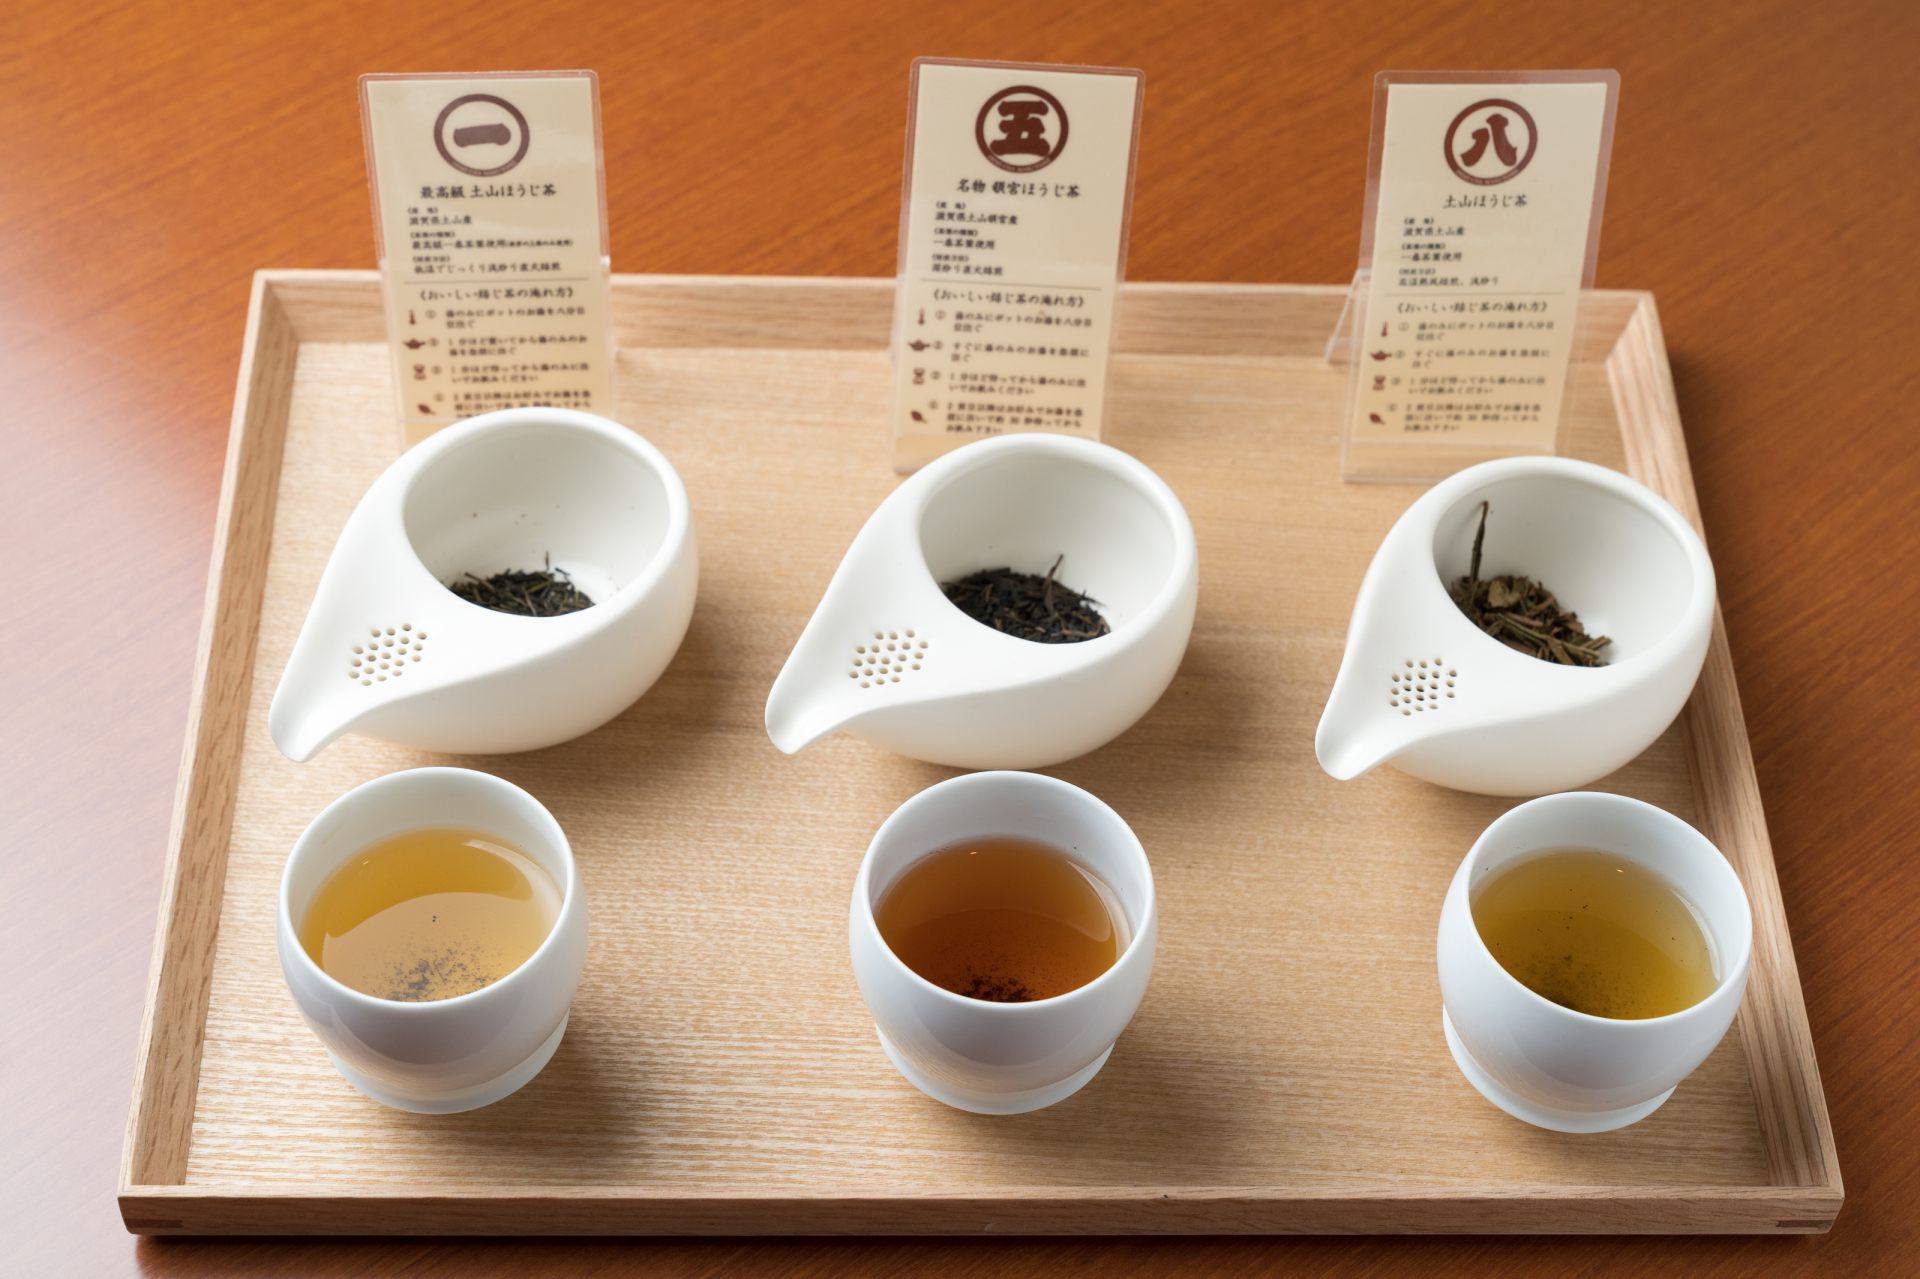 テイスティングで、色、香り、味の違いなどほうじ茶の奥深さを実感